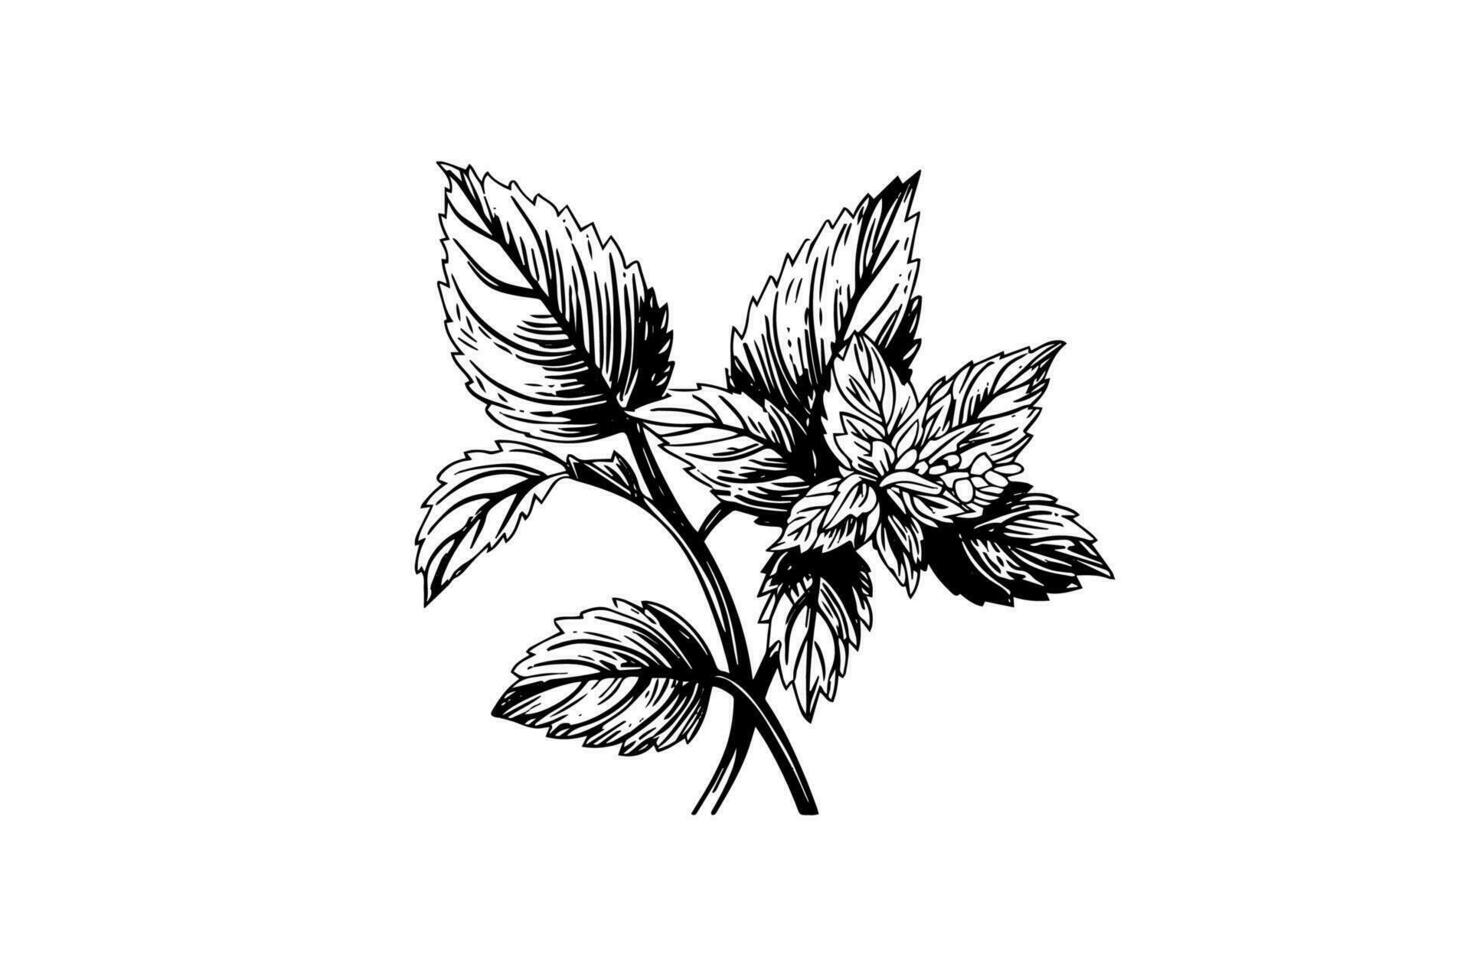 pepermunt schetsen. munt bladeren takken en bloemen gravure stijl vector illustratie